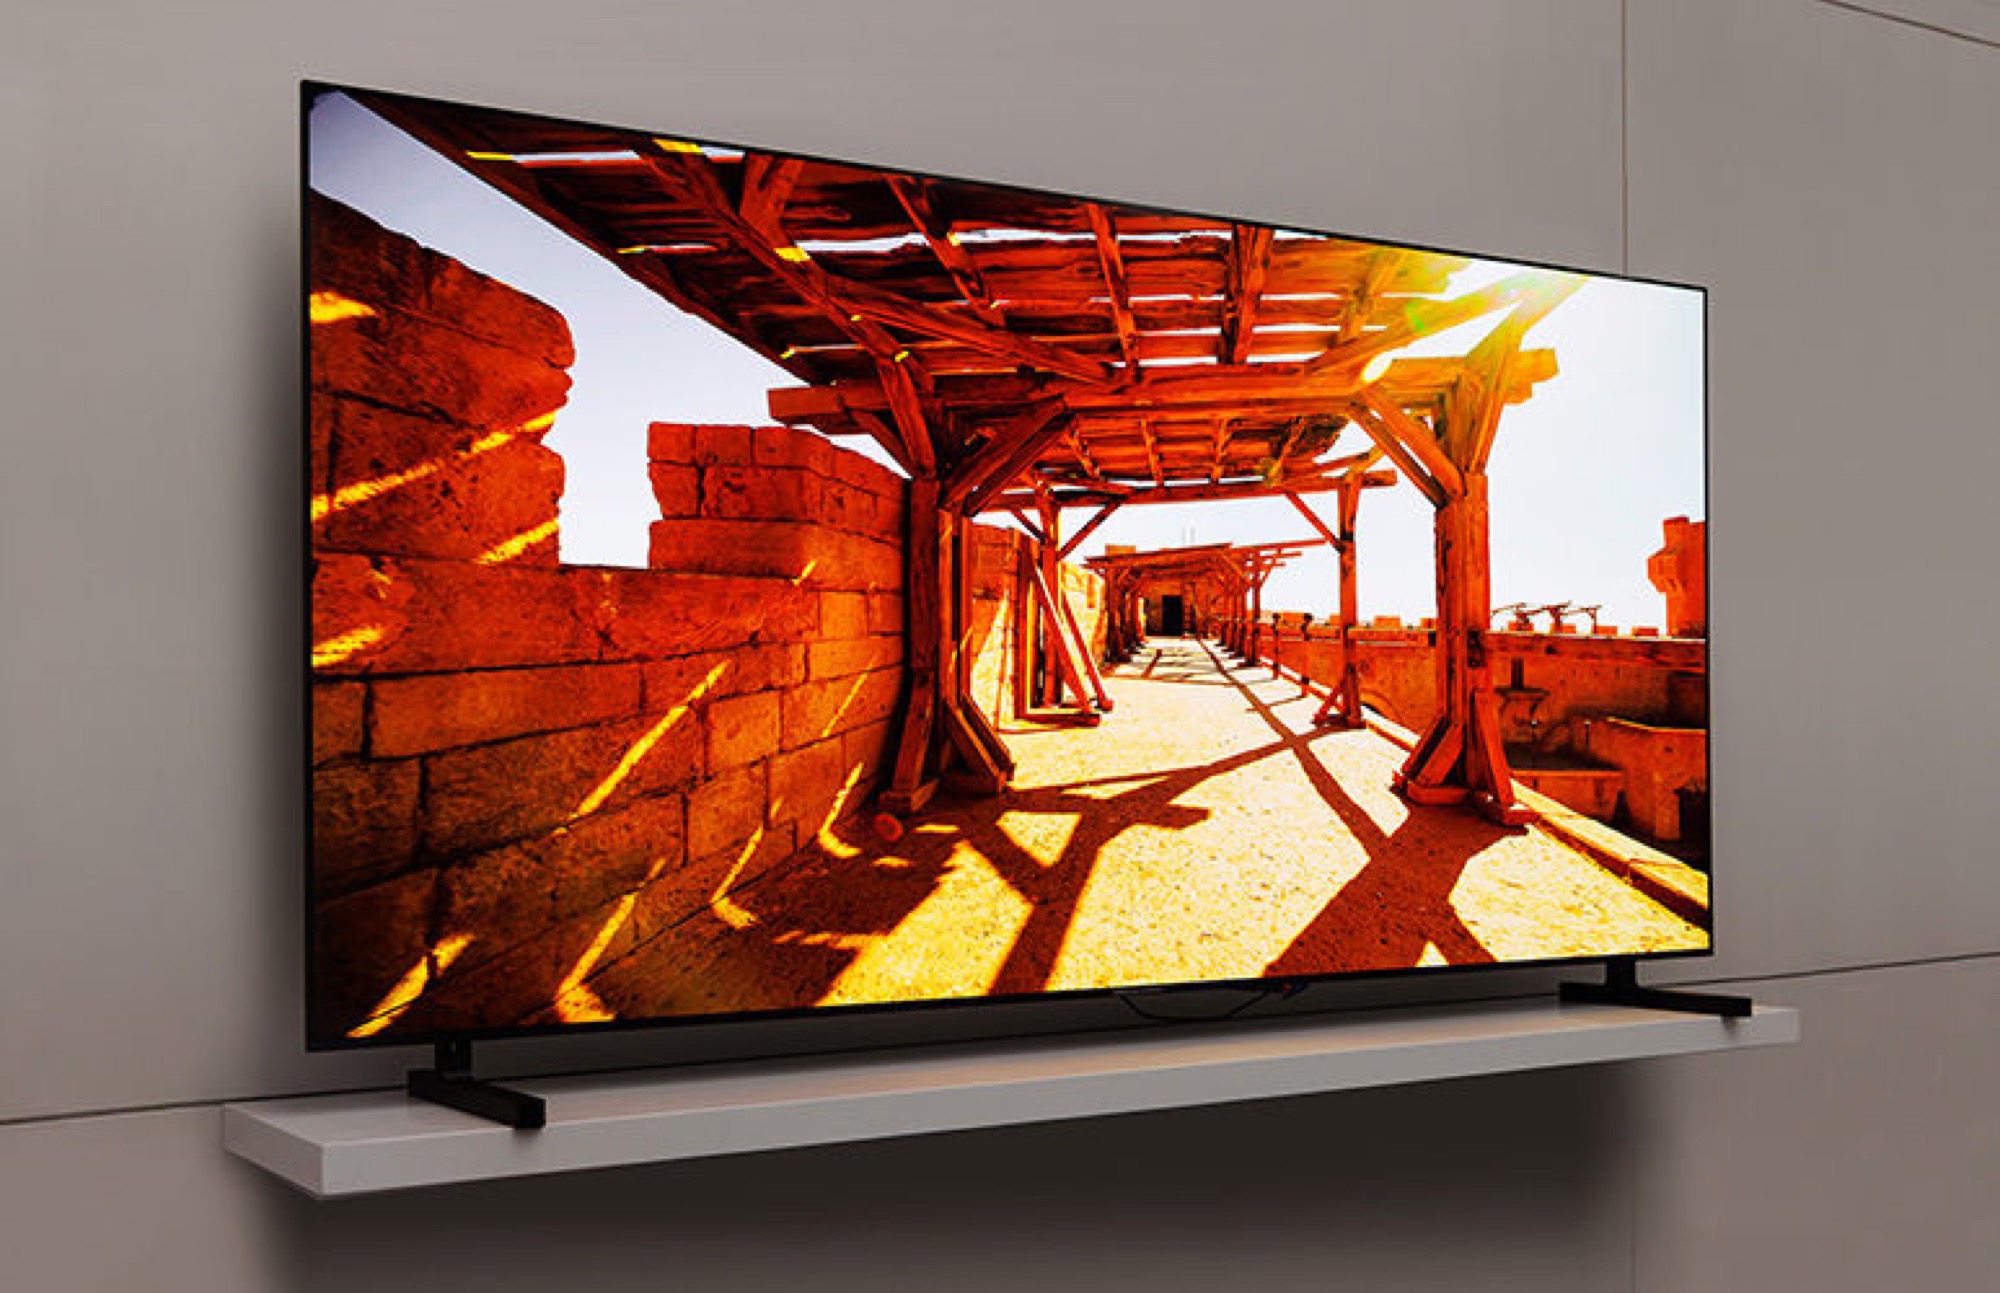 Samsung QDOLED Smart TVs werden 2023 größer und über 2.000 Nits hell